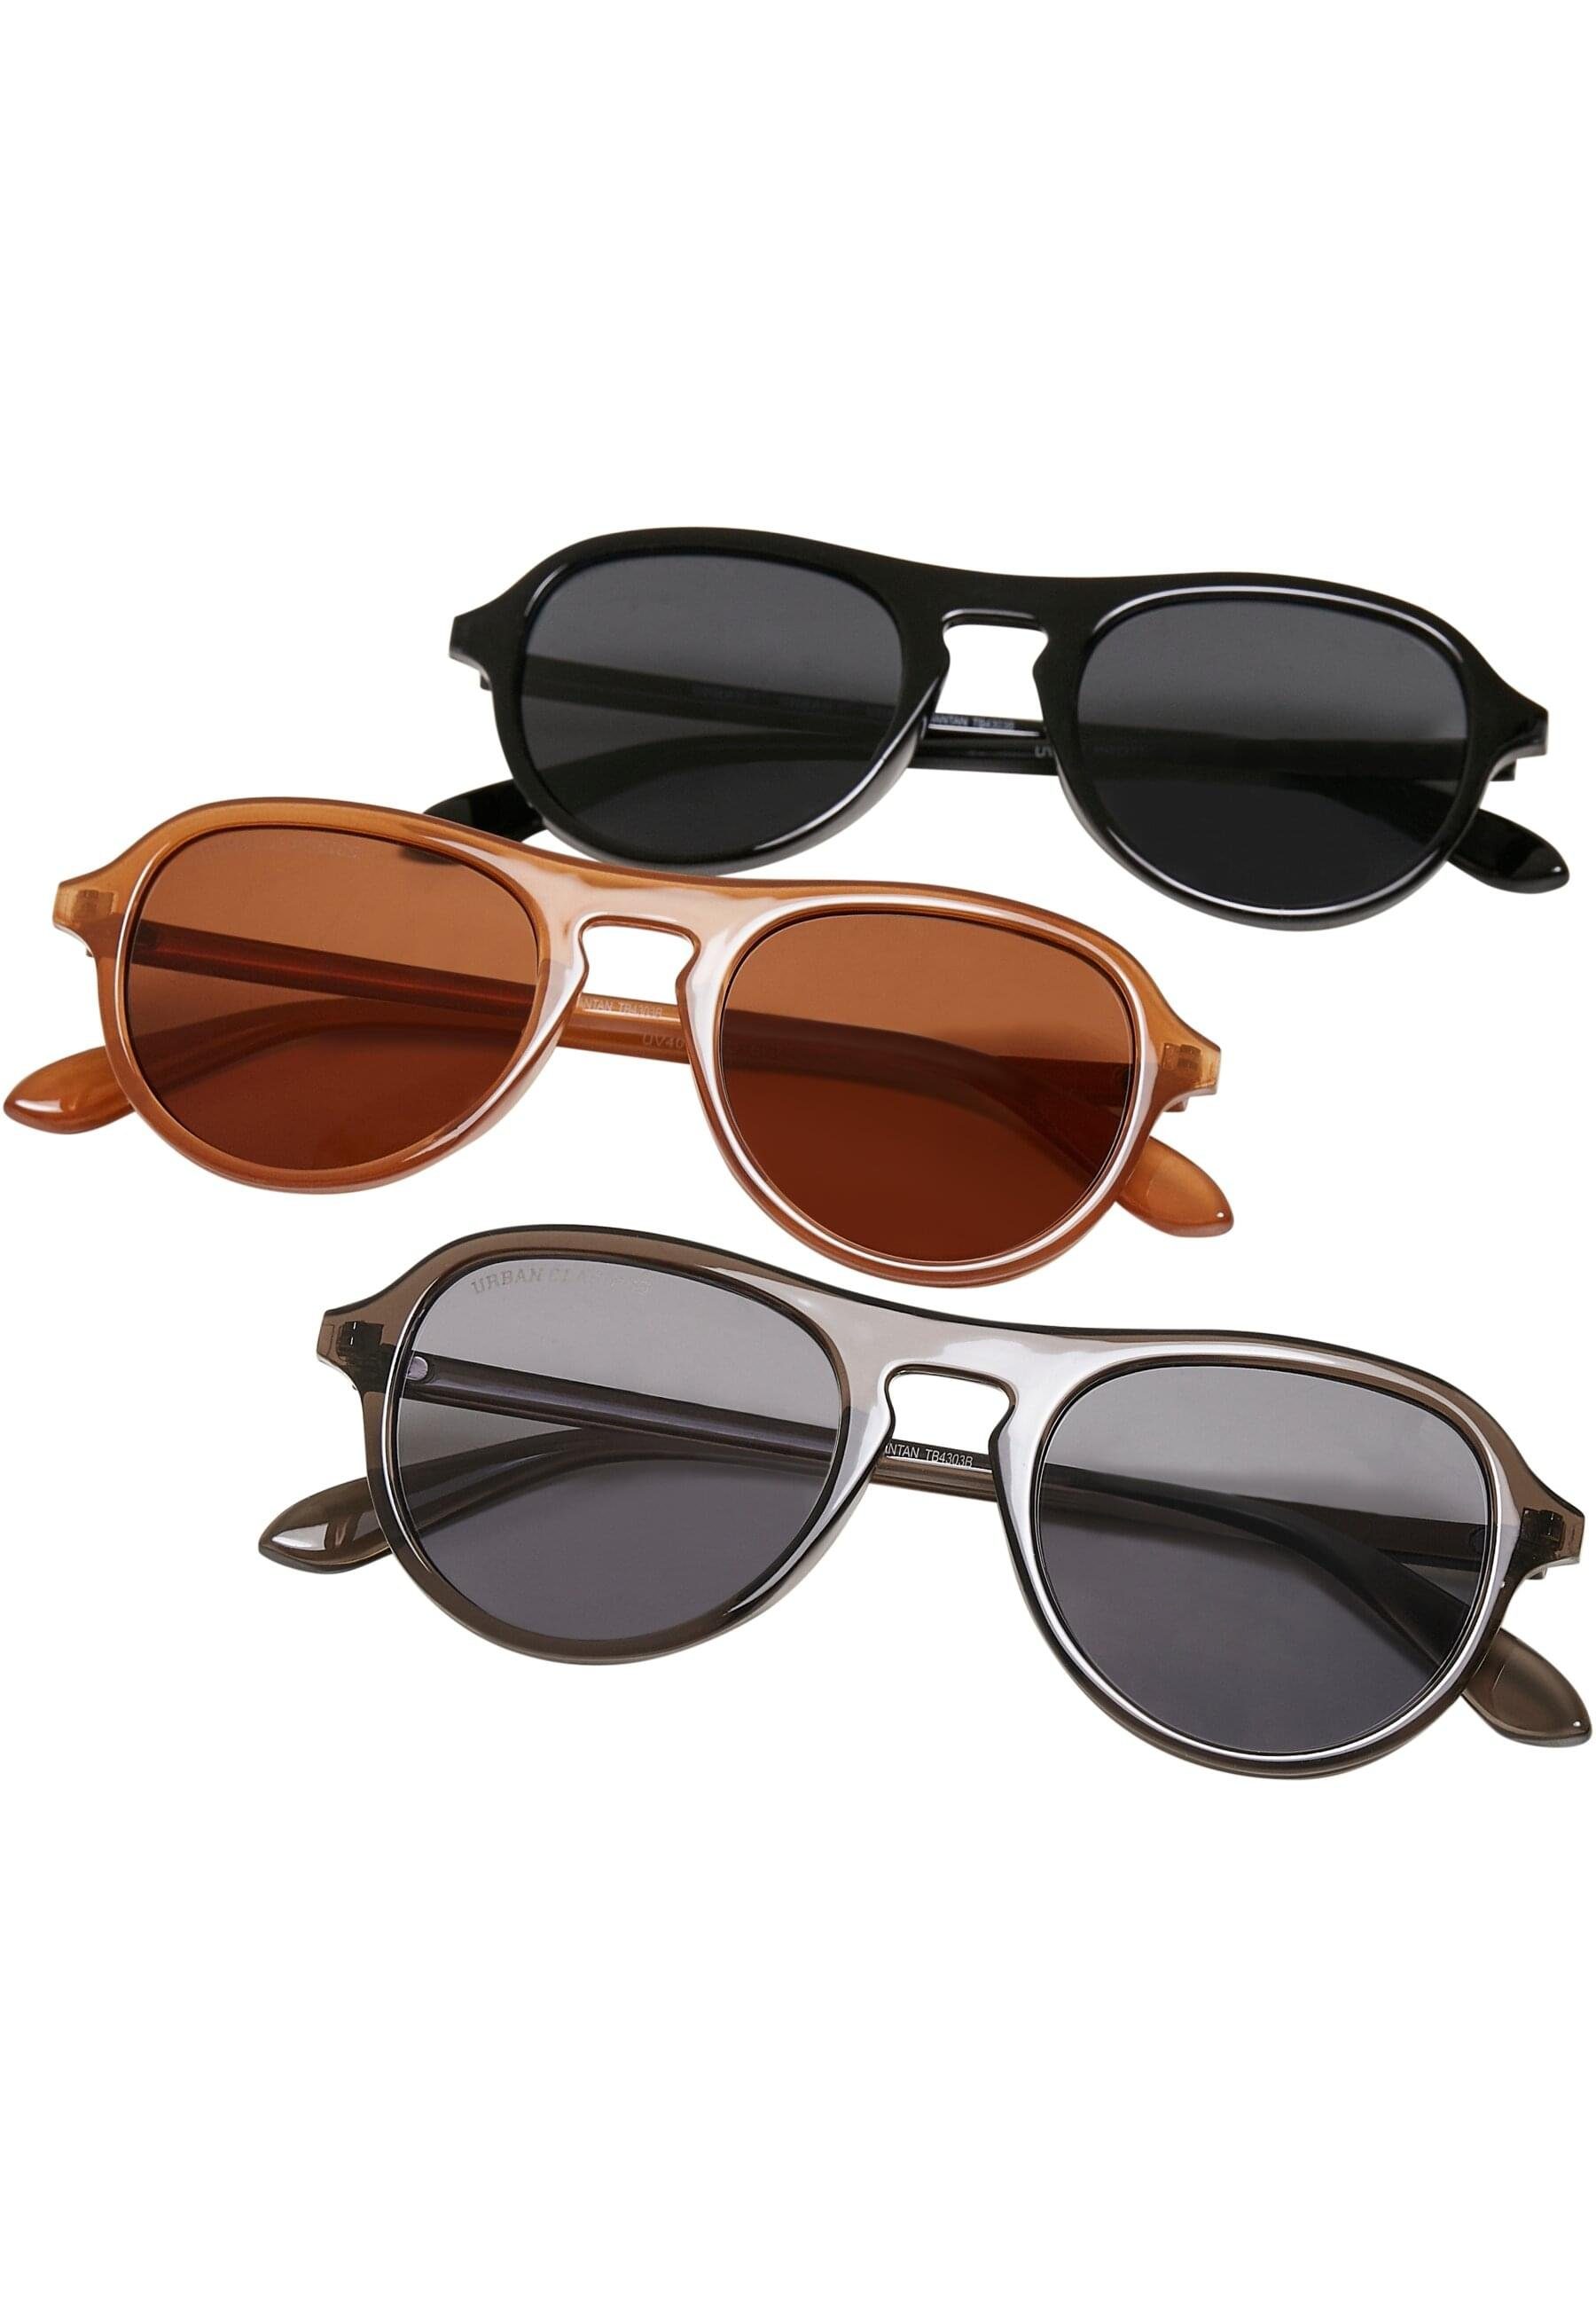 Sonnenbrille Kalimantan CLASSICS 3-Pack URBAN Sunglasses Unisex